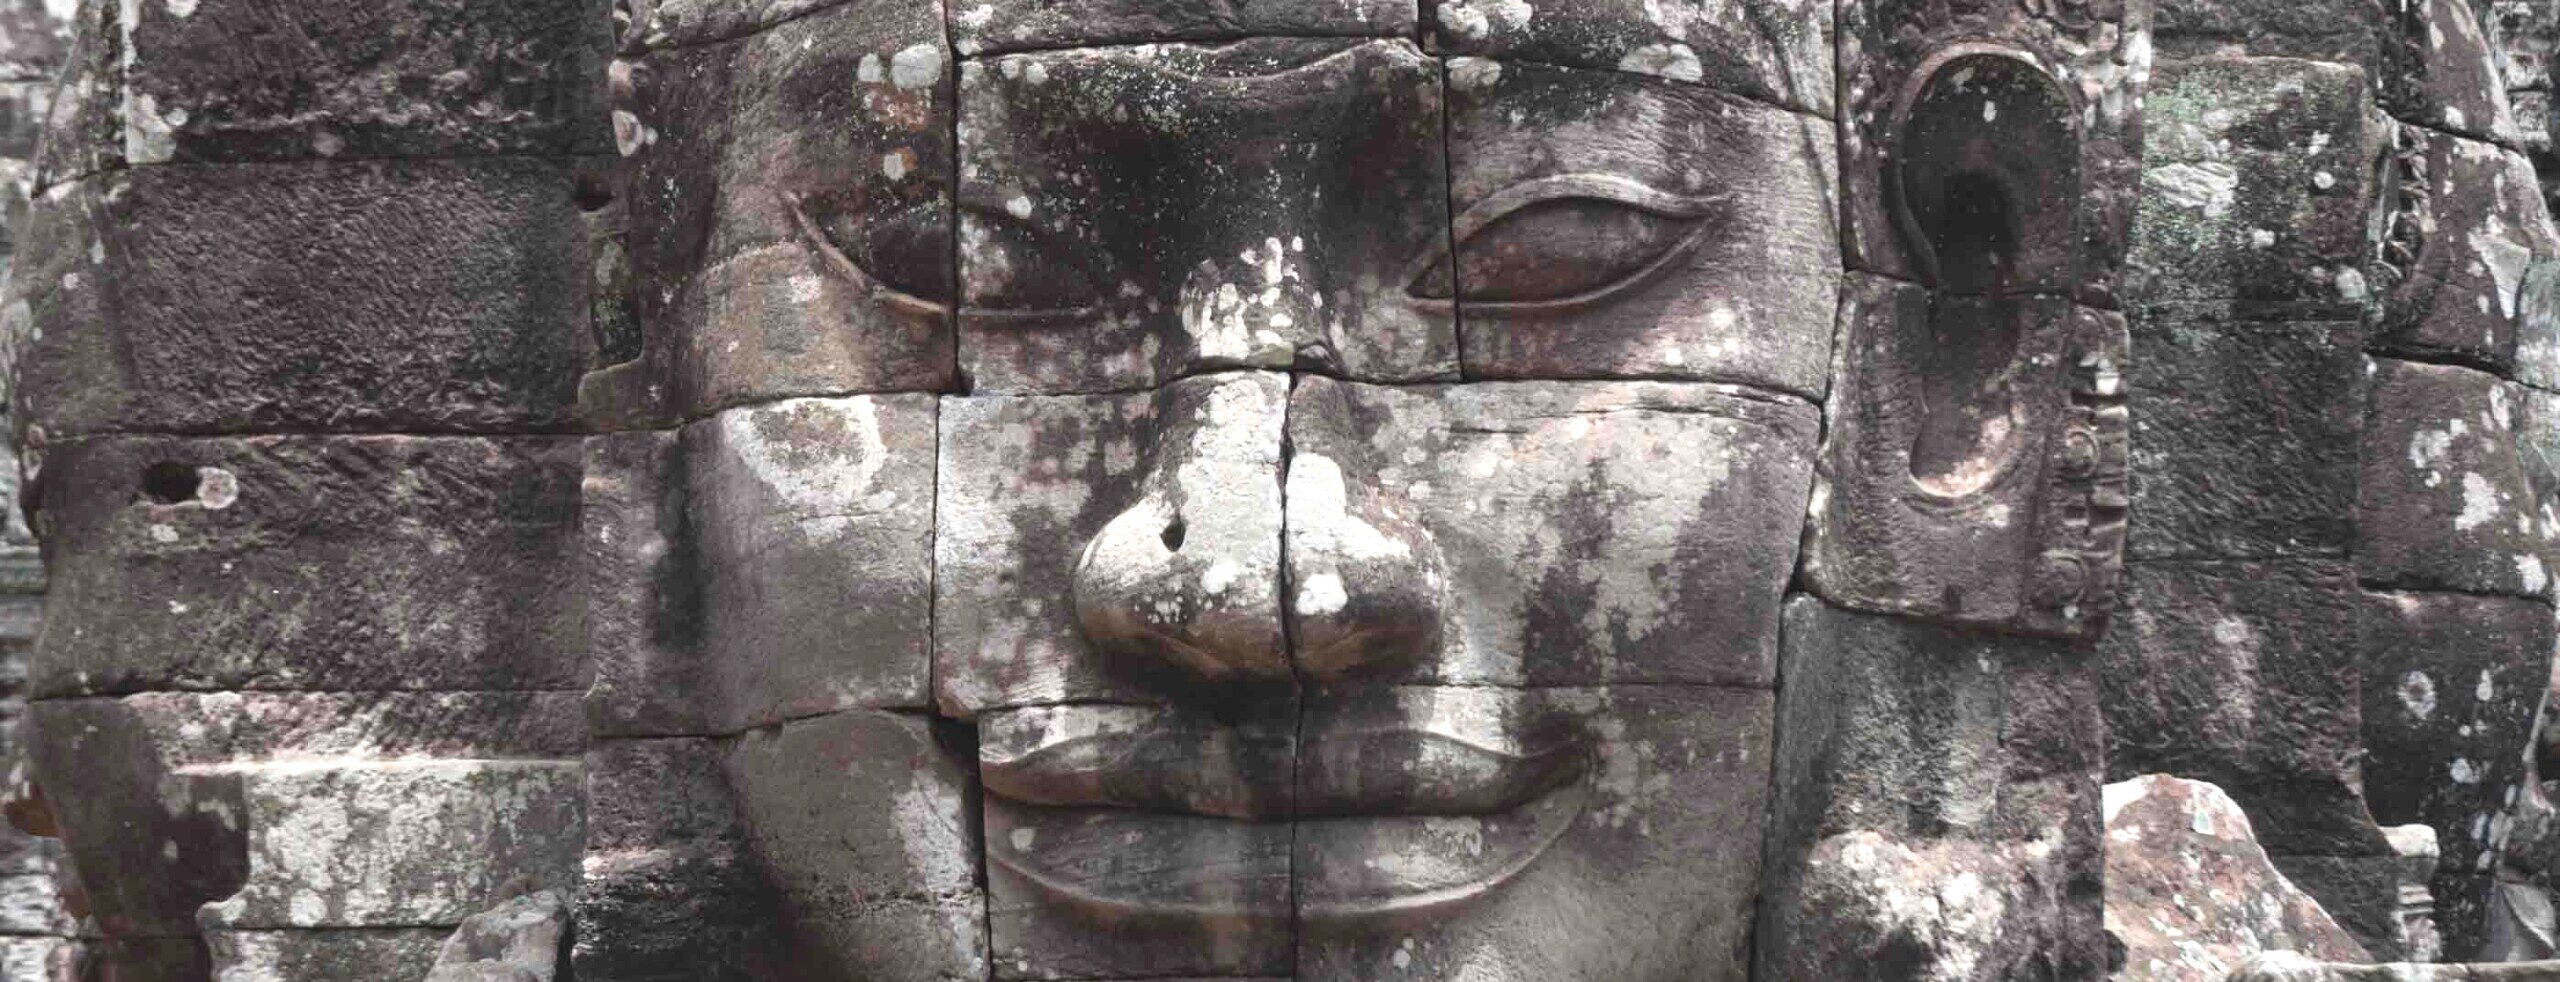 Naso occhi e bocca scolpiti sulla roccia al tempio di Bayon in Cambogia.